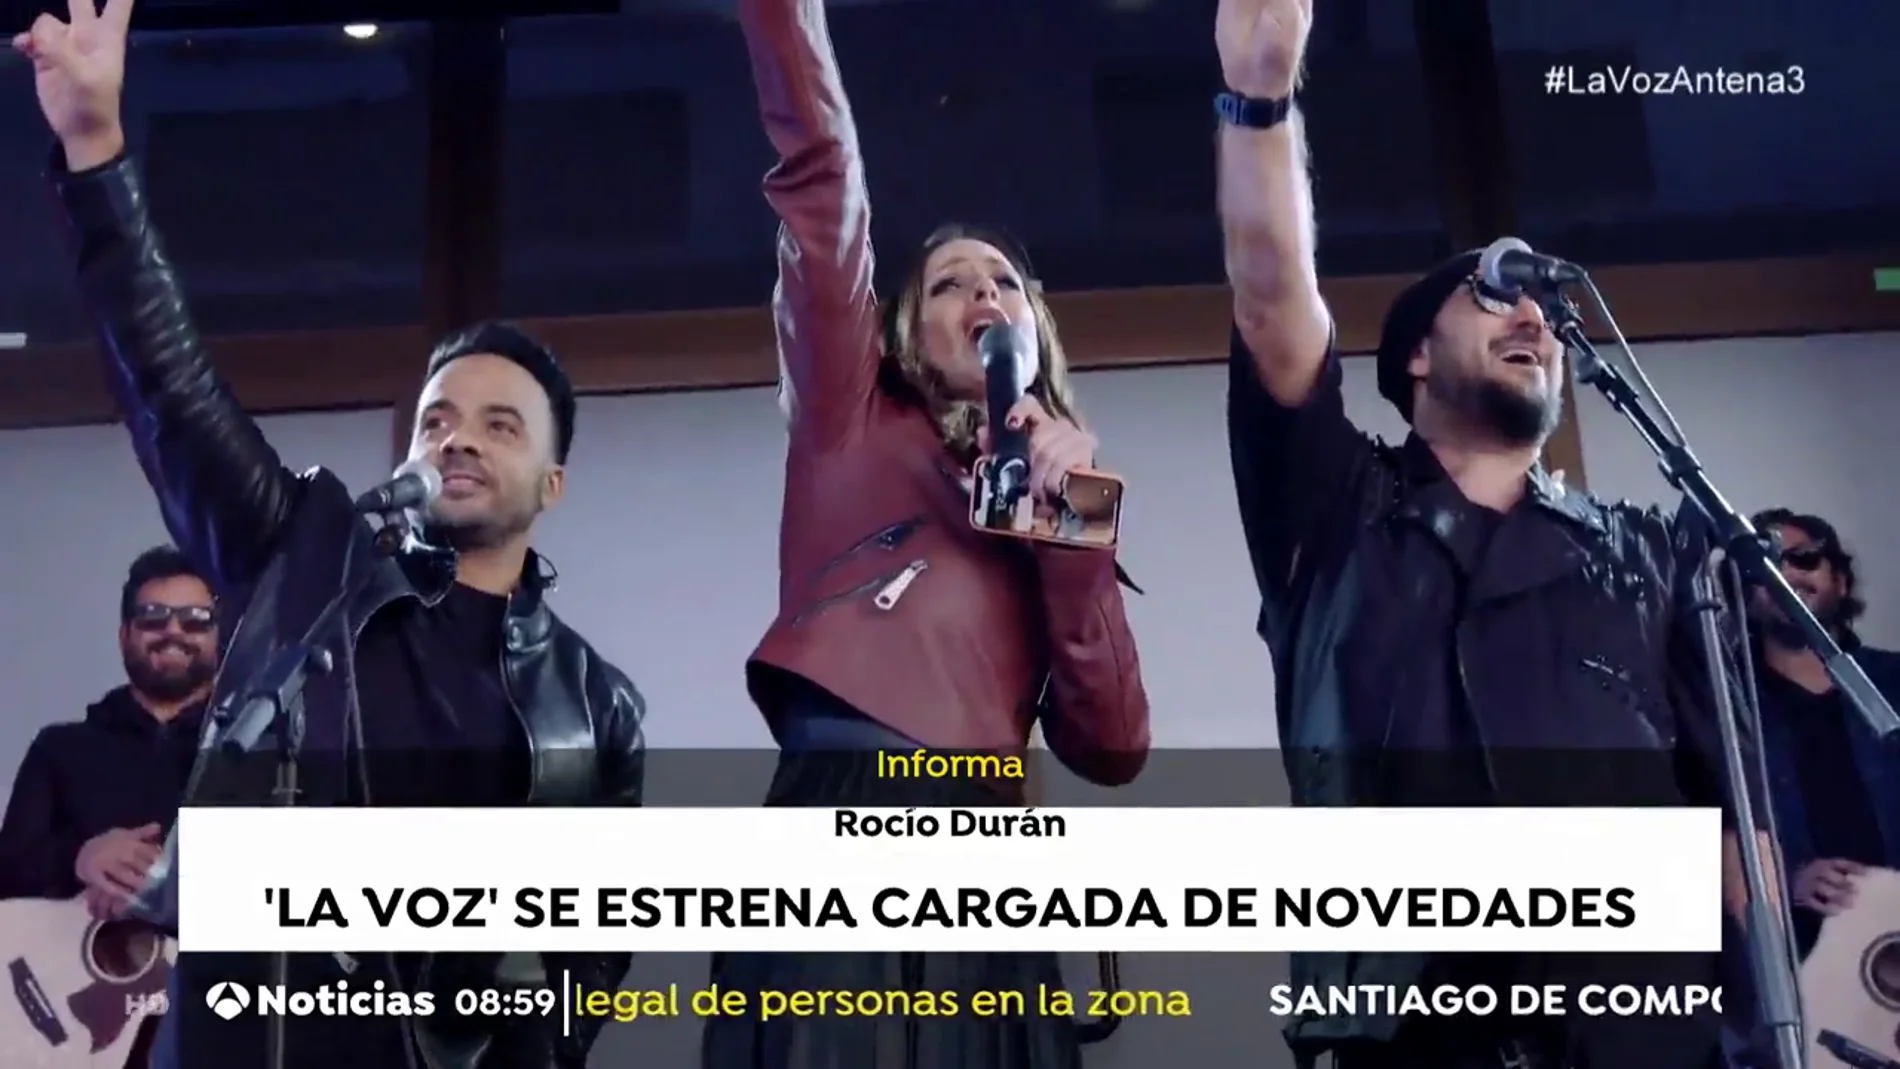 'La Voz' se estrena en Antena 3 cargada de novedades 